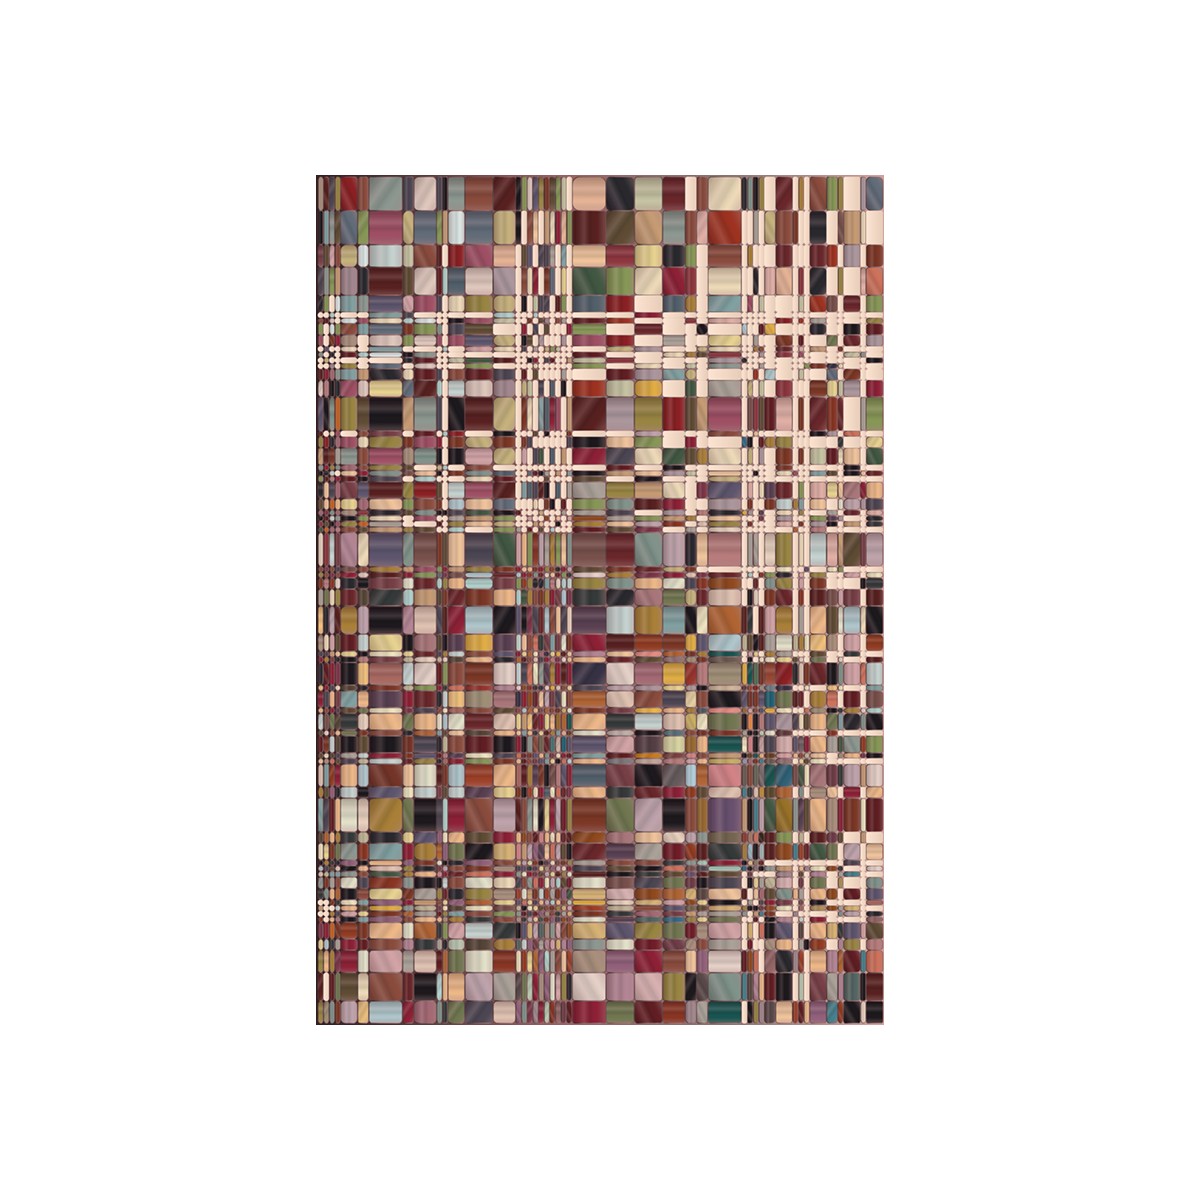 Bead rug - 300 x 400 cm - Yarn Box